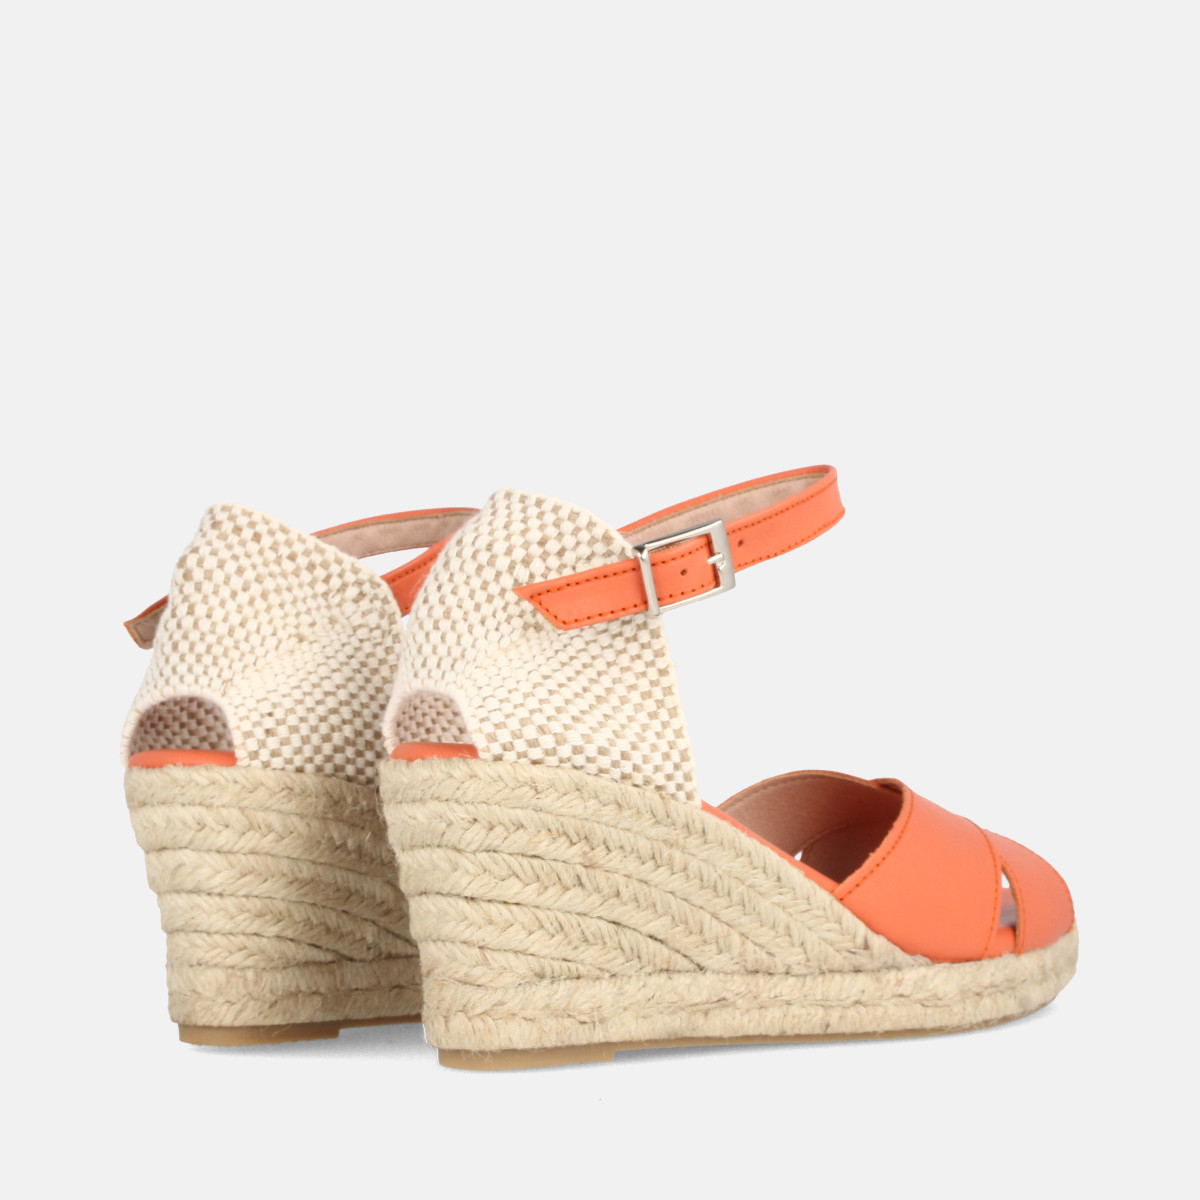 Sandales confortables compensées à bandes croisées - Orange - Marila